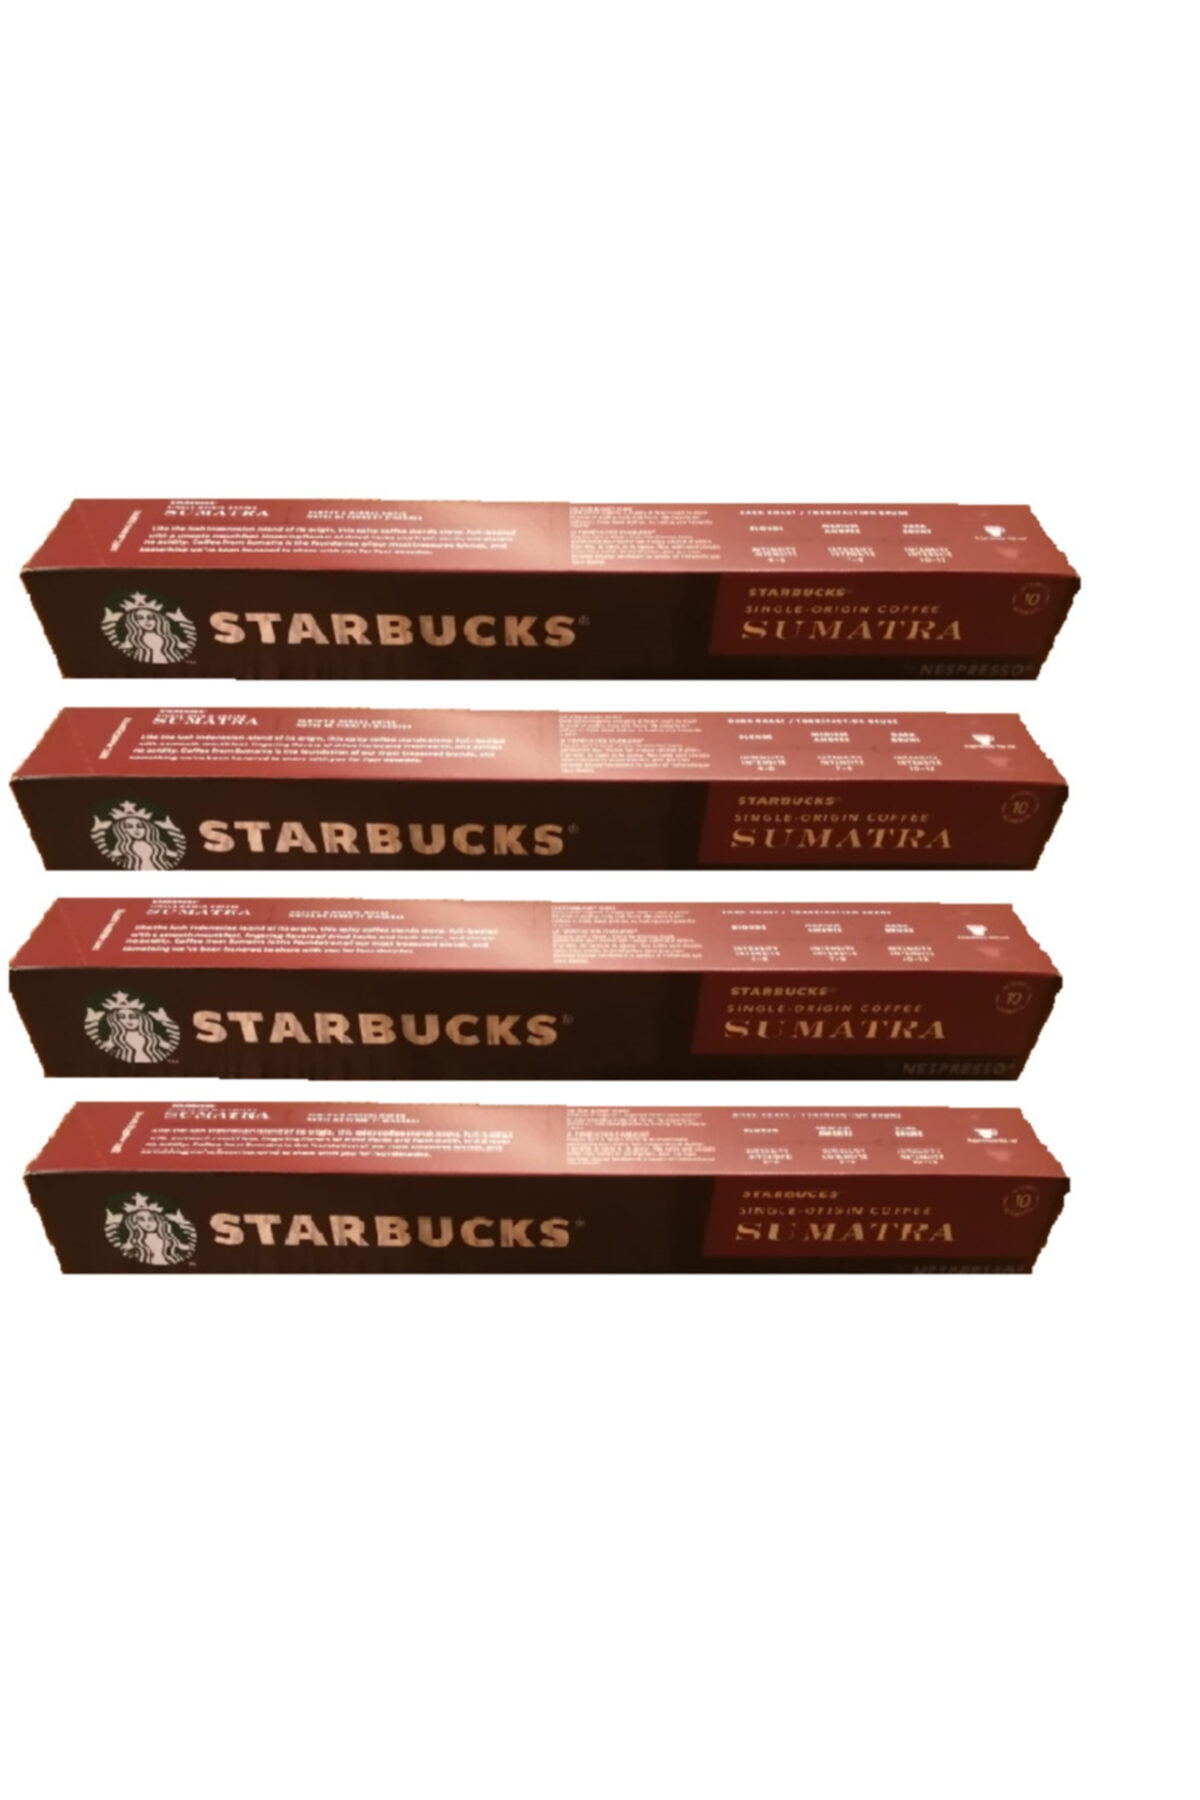 Starbucks Sumatra Kapsül Kahve X4 Kutu Özel Seri